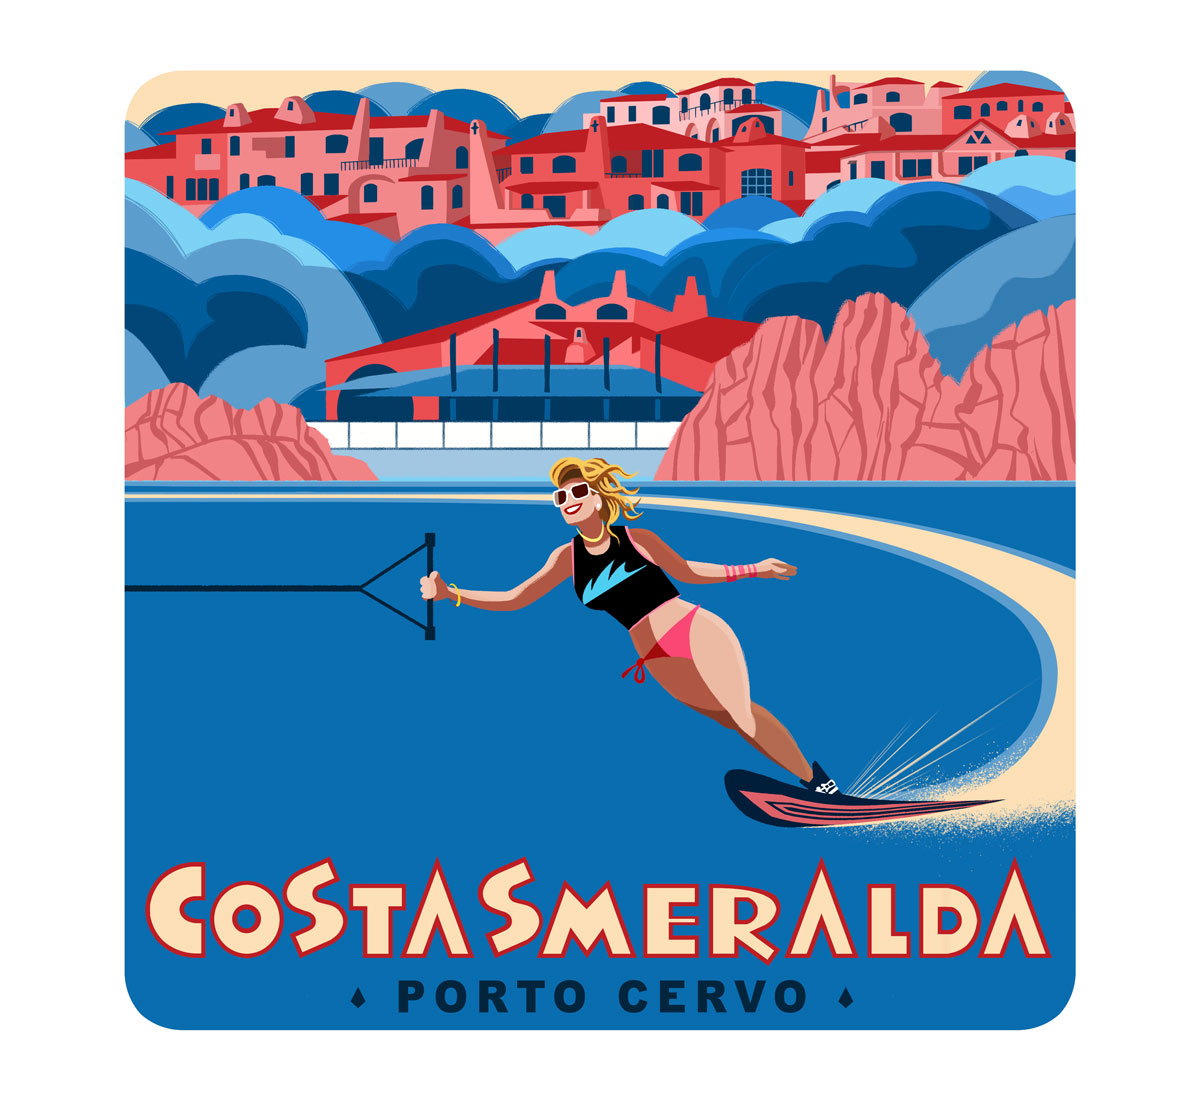 Illustration designed to evoke the spirit of freedom of the seaside resort town of Porto Cervo